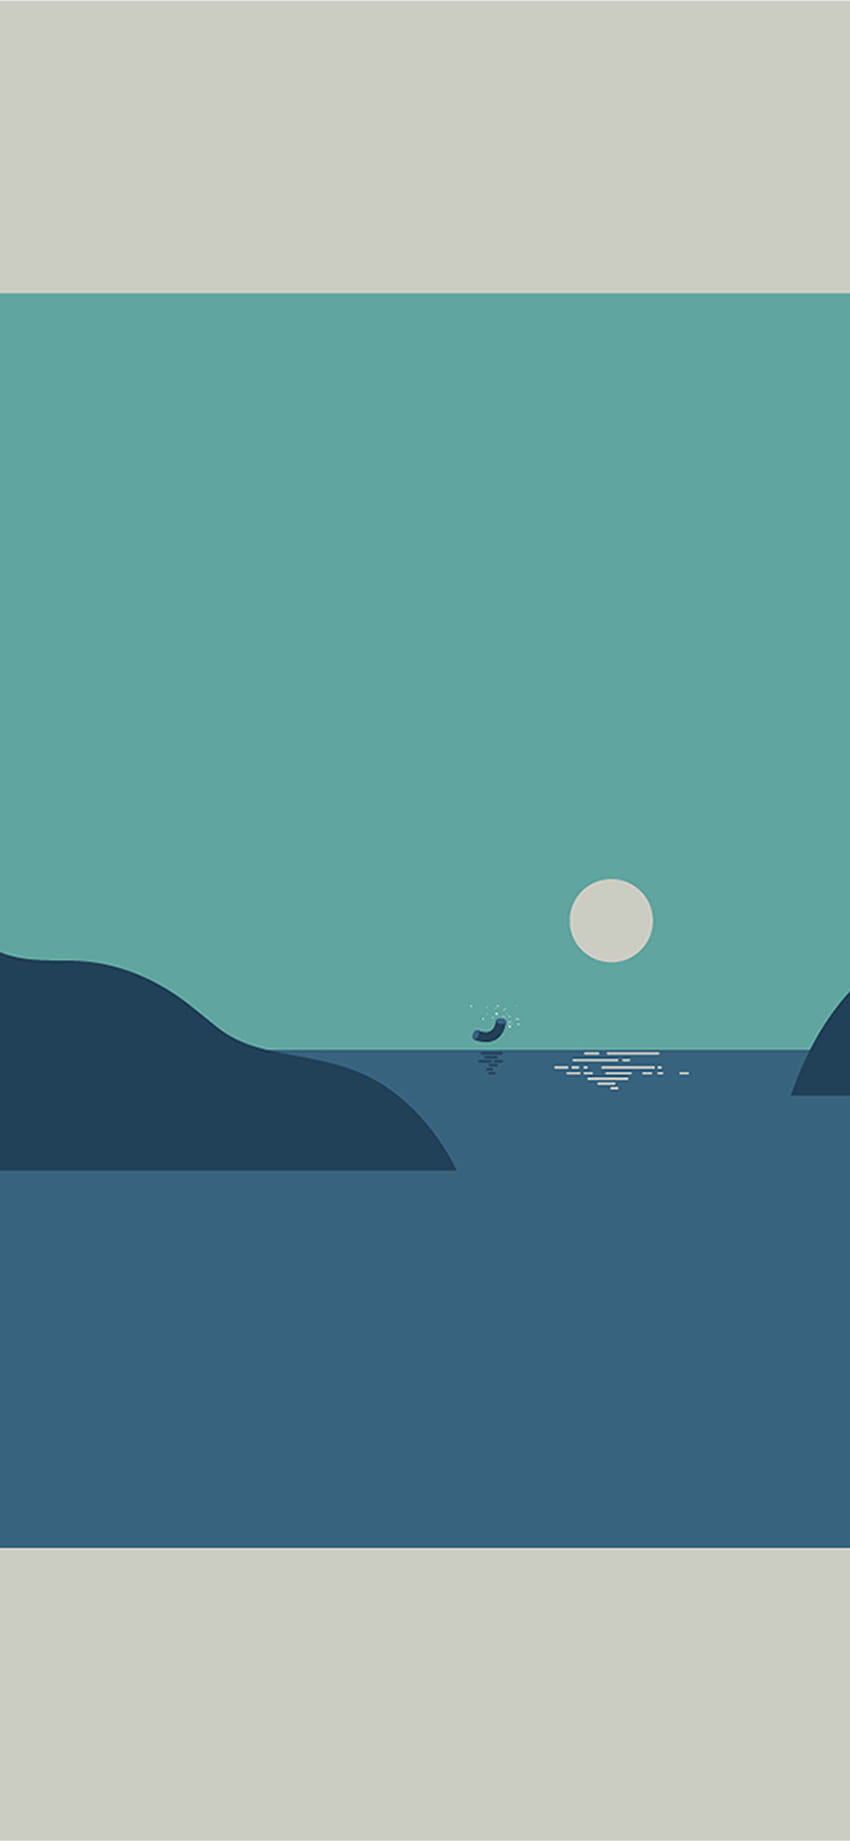 IPhone X . pattern background simple sea illust, Minimal Beach ...